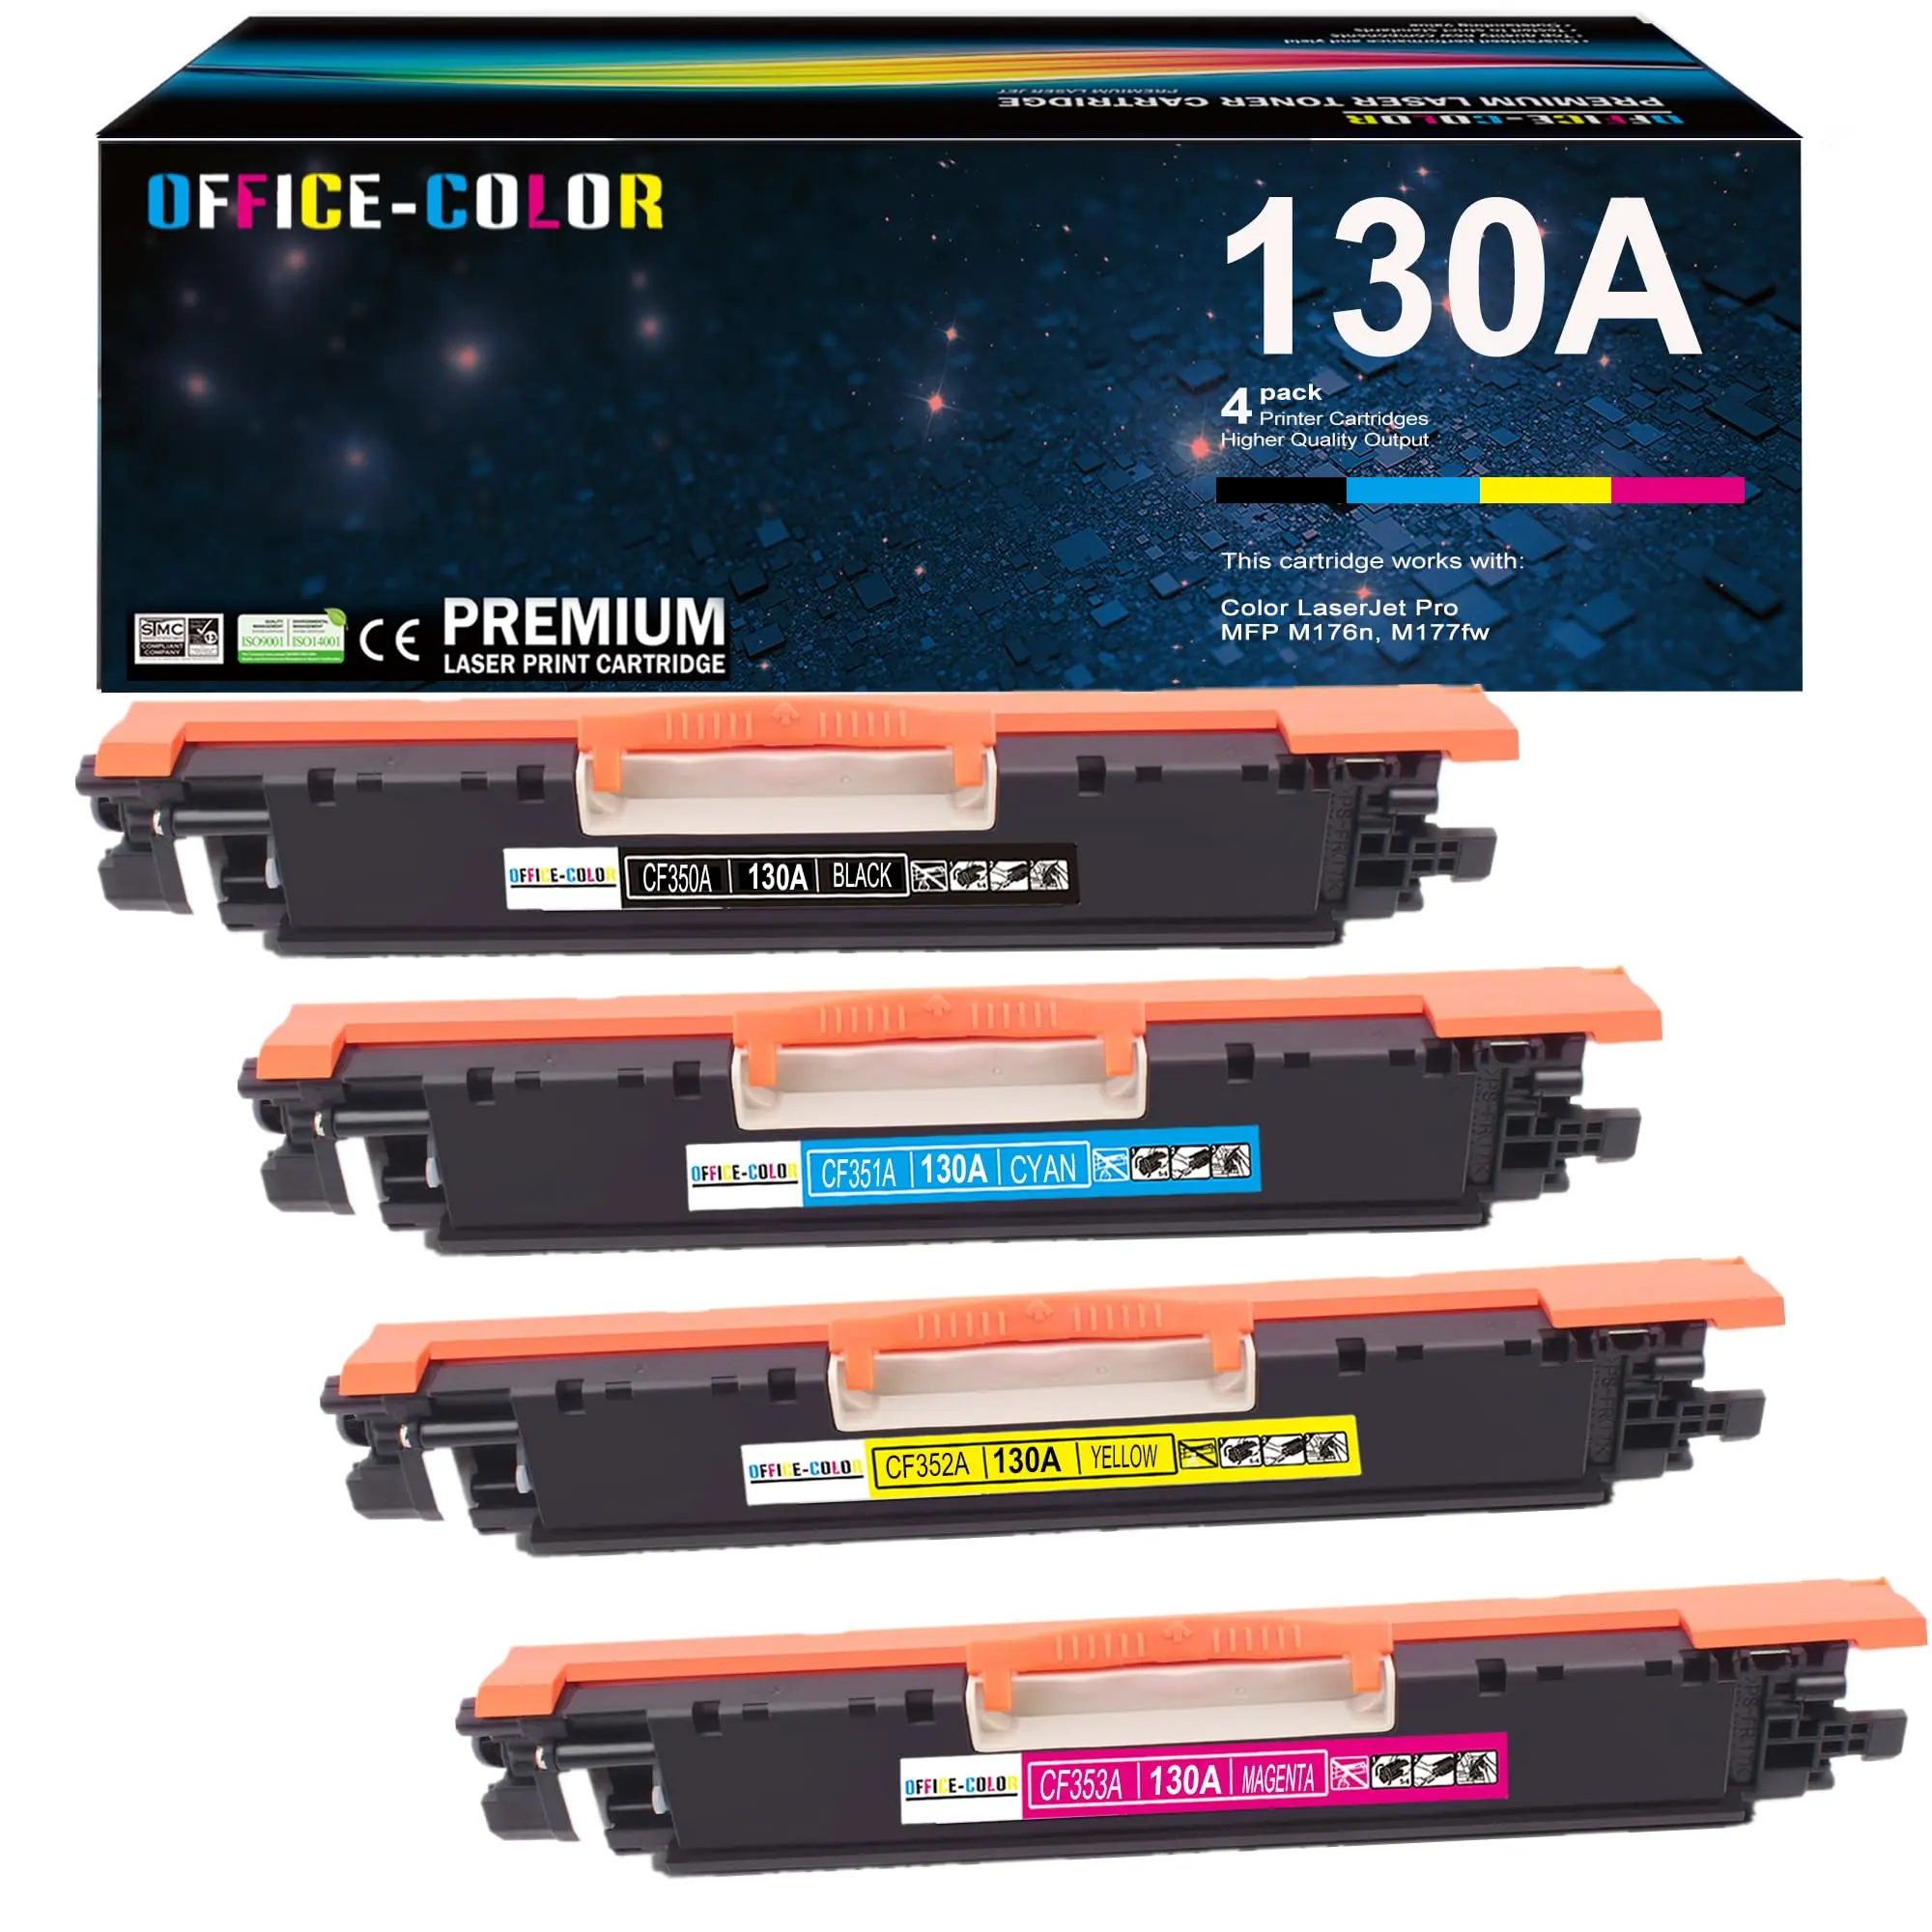 hewlett packard color jet pro mfp m177fw ink cartridge - Does Color LaserJet Pro MFP M177fw scan